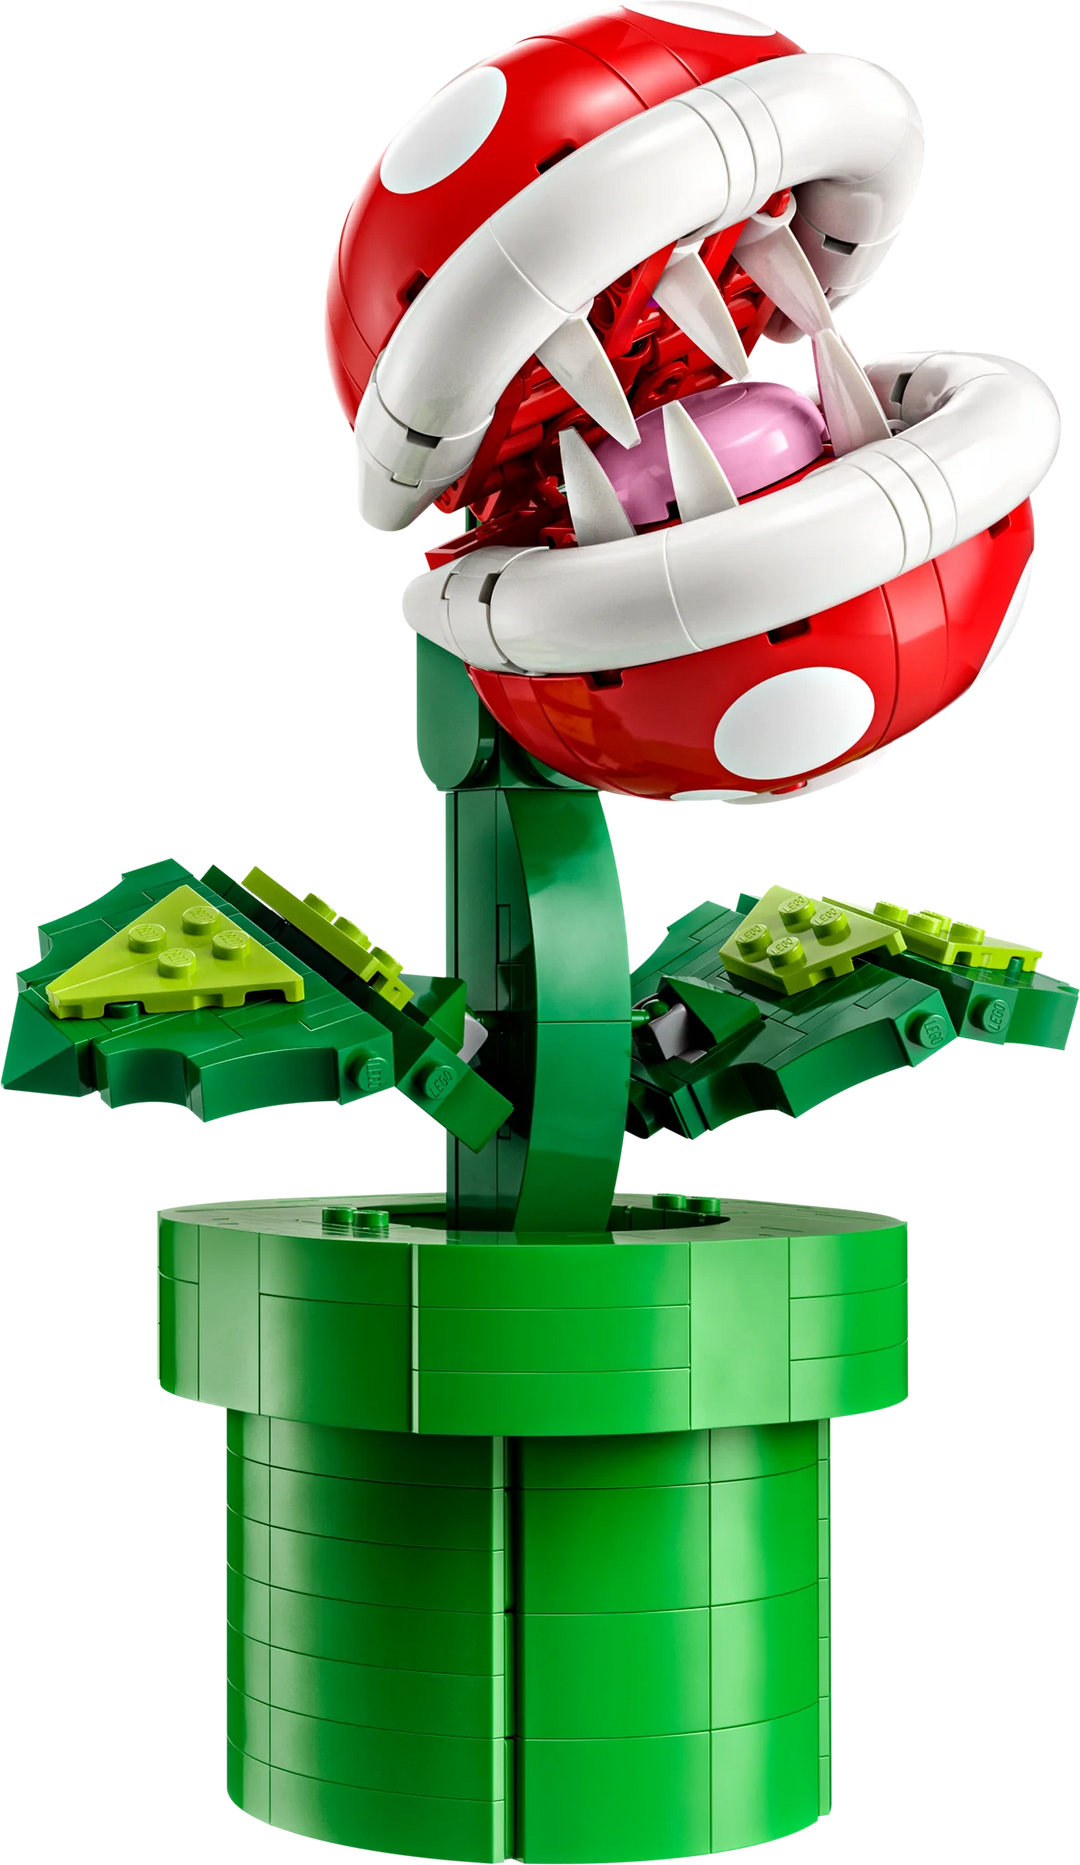 LEGO® Super Mario™: Piranha Plant